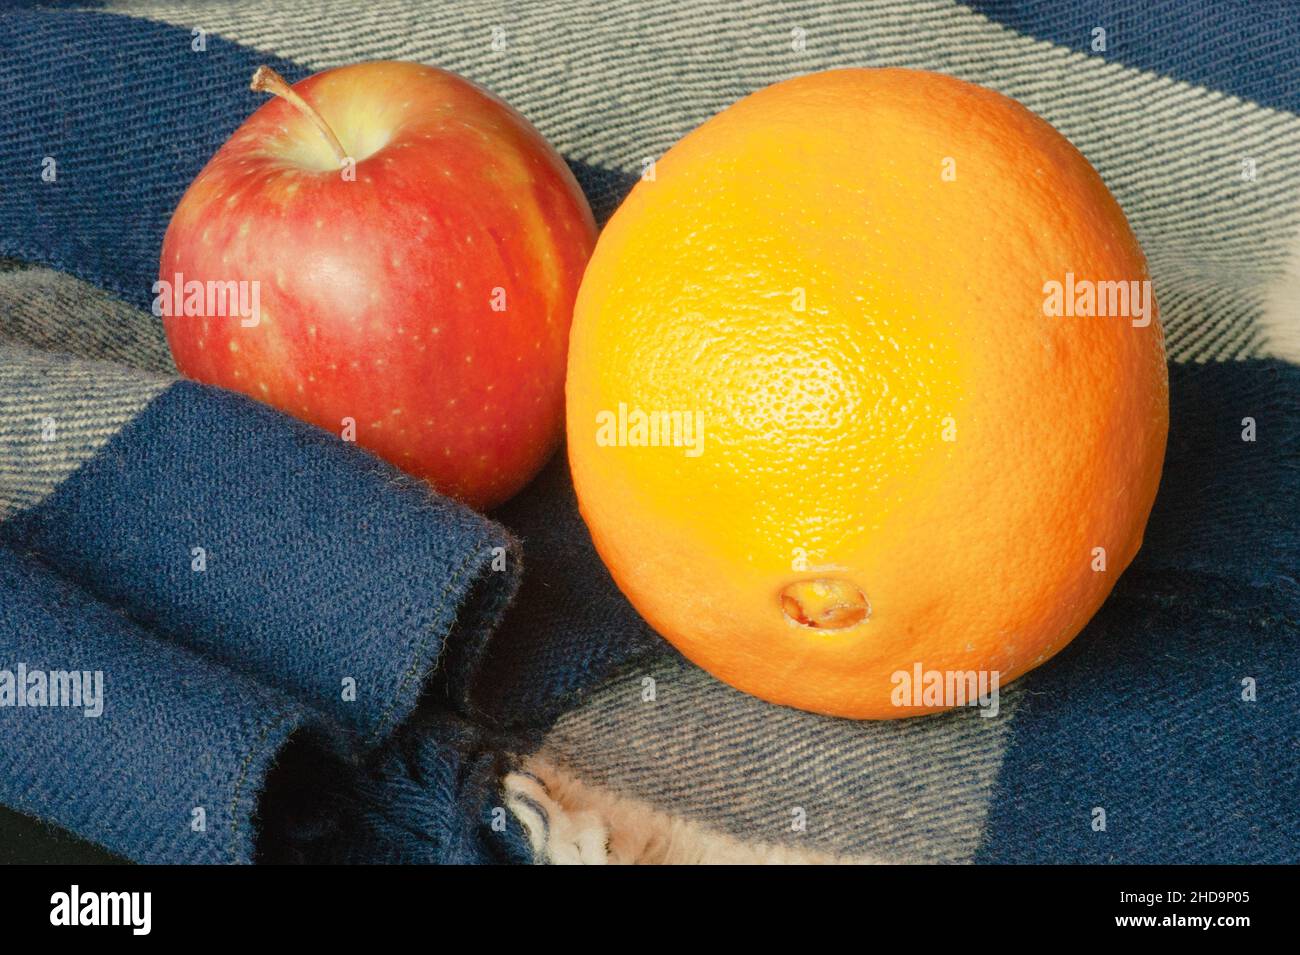 Winterfrüchte, Orange und Apfel, auf einem blau-weißen Wollschal. Die Nahaufnahme zeigt Textur, Kontrast und eine frische Qualität in verzehrfertigen Lebensmitteln. Stockfoto